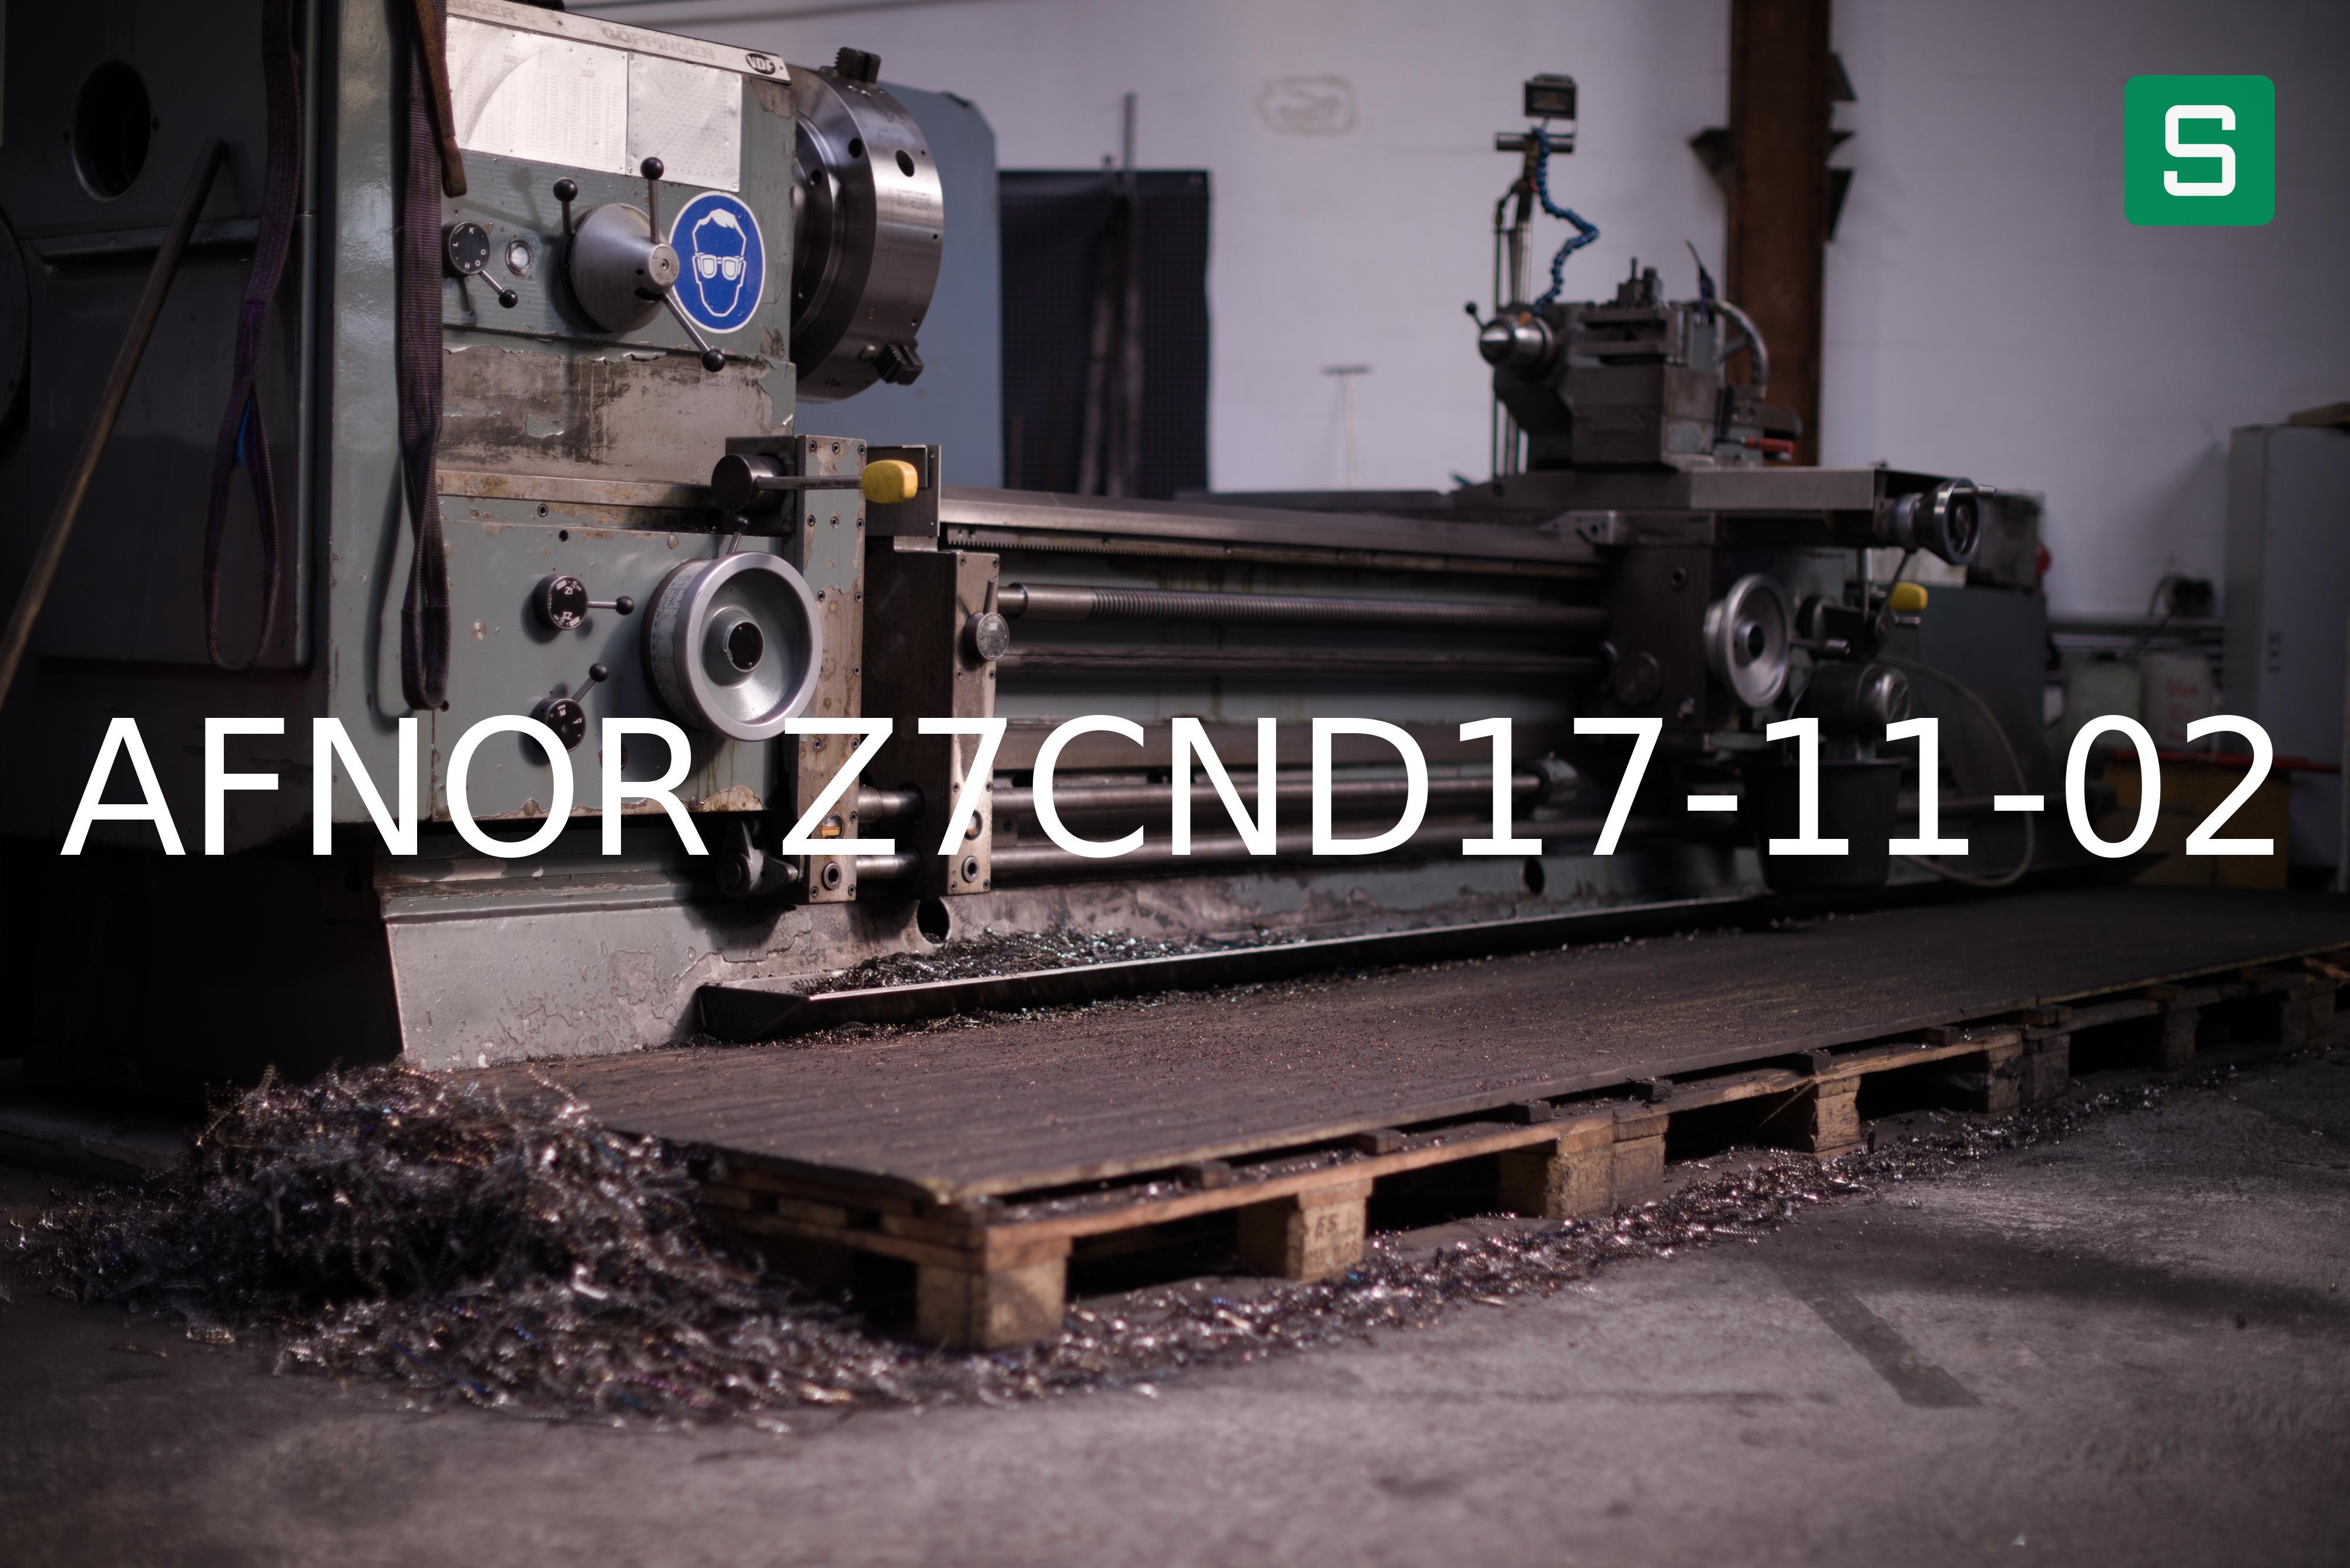 Steel Material: AFNOR Z7CND17-11-02